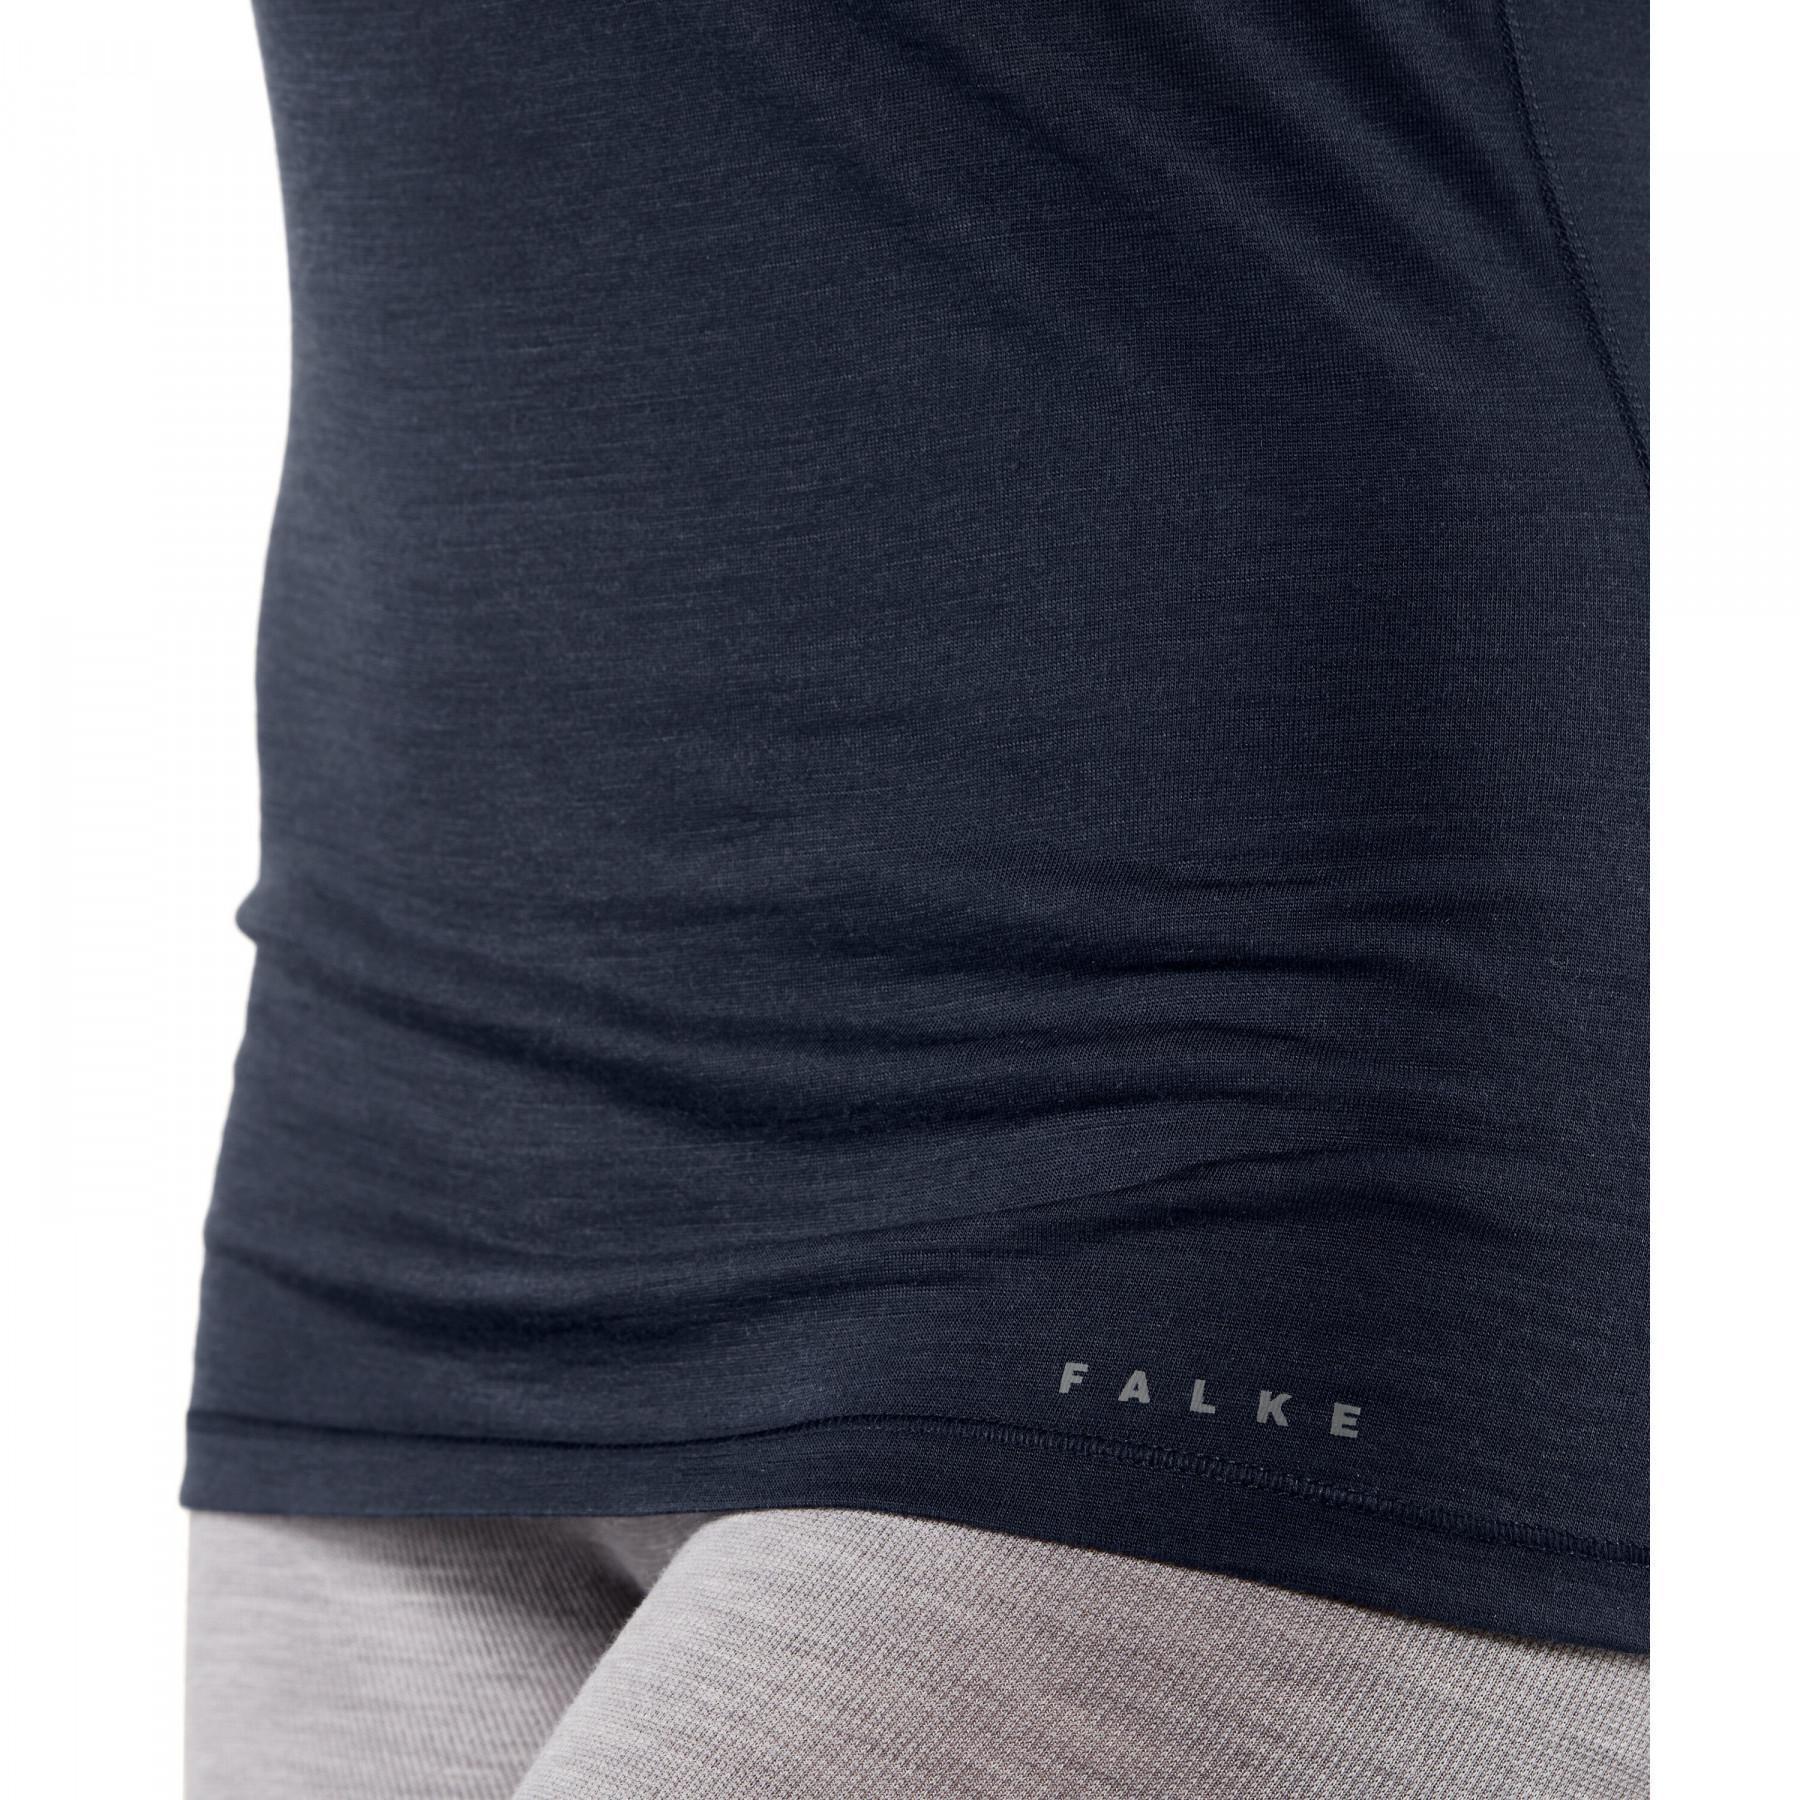 Camiseta mujer Falke Ski